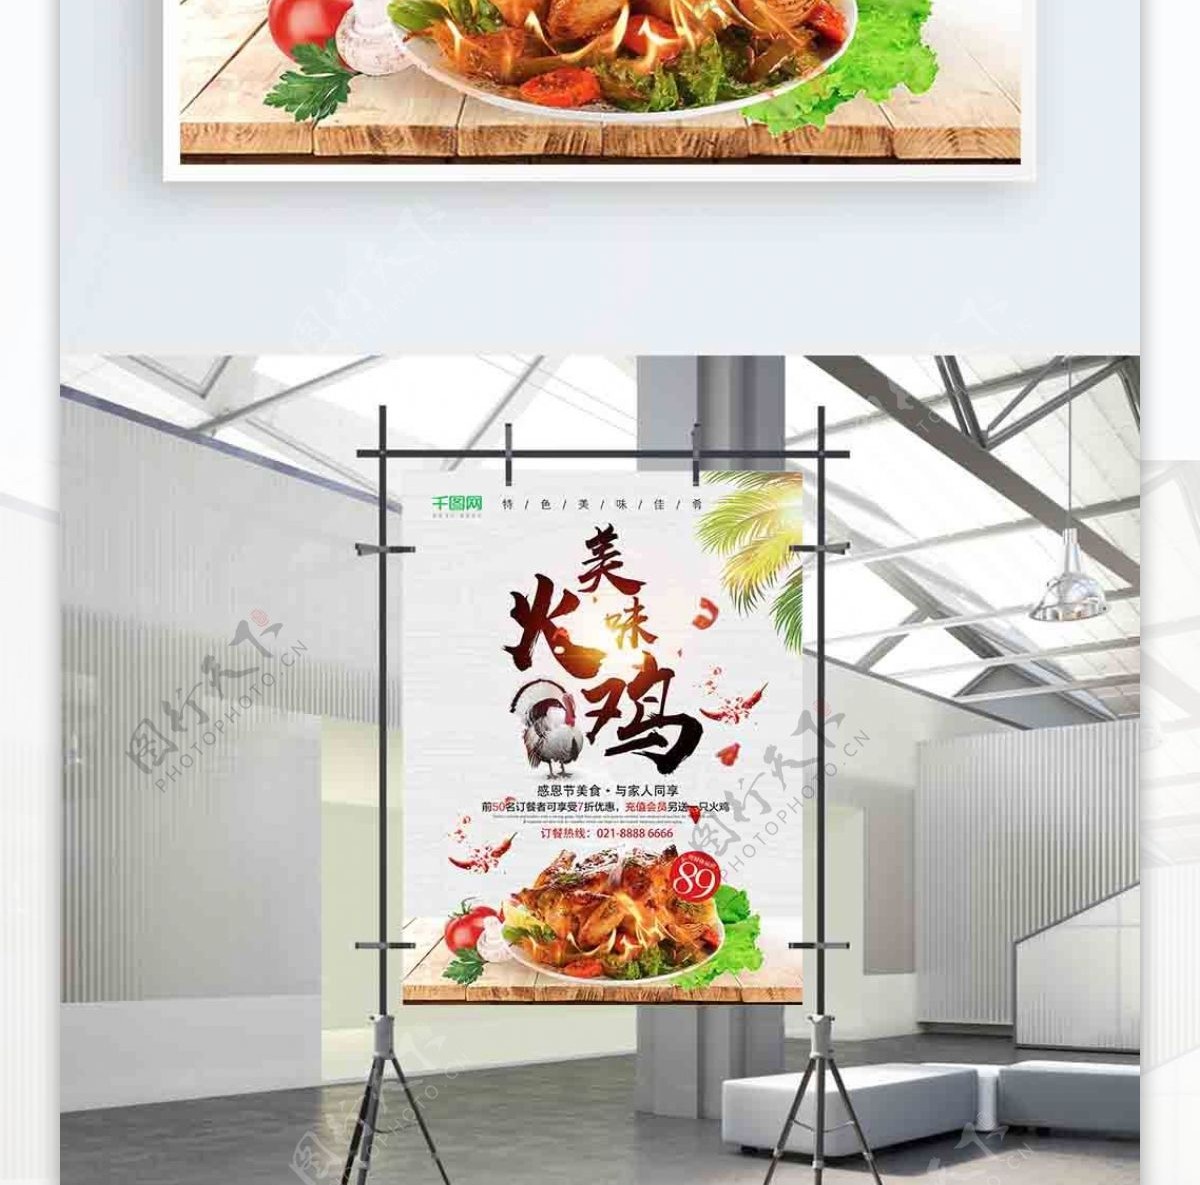 感恩节美食美味火鸡促销活动海报